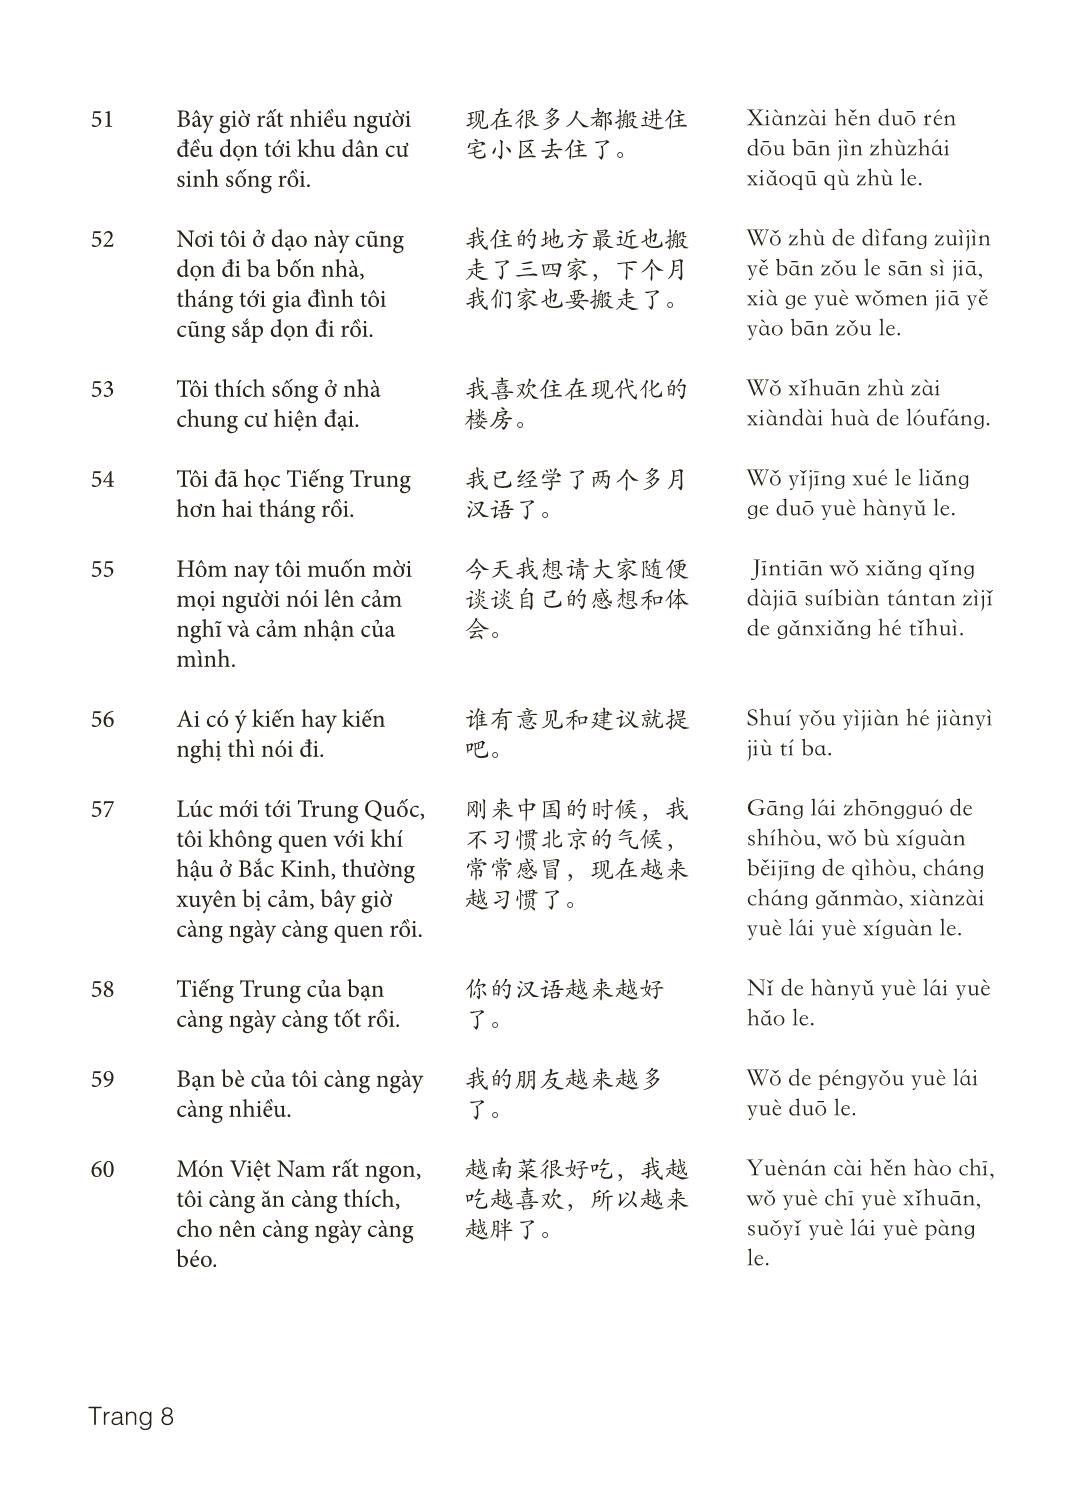 3000 Câu đàm thoại tiếng Hoa - Phần 20 trang 8